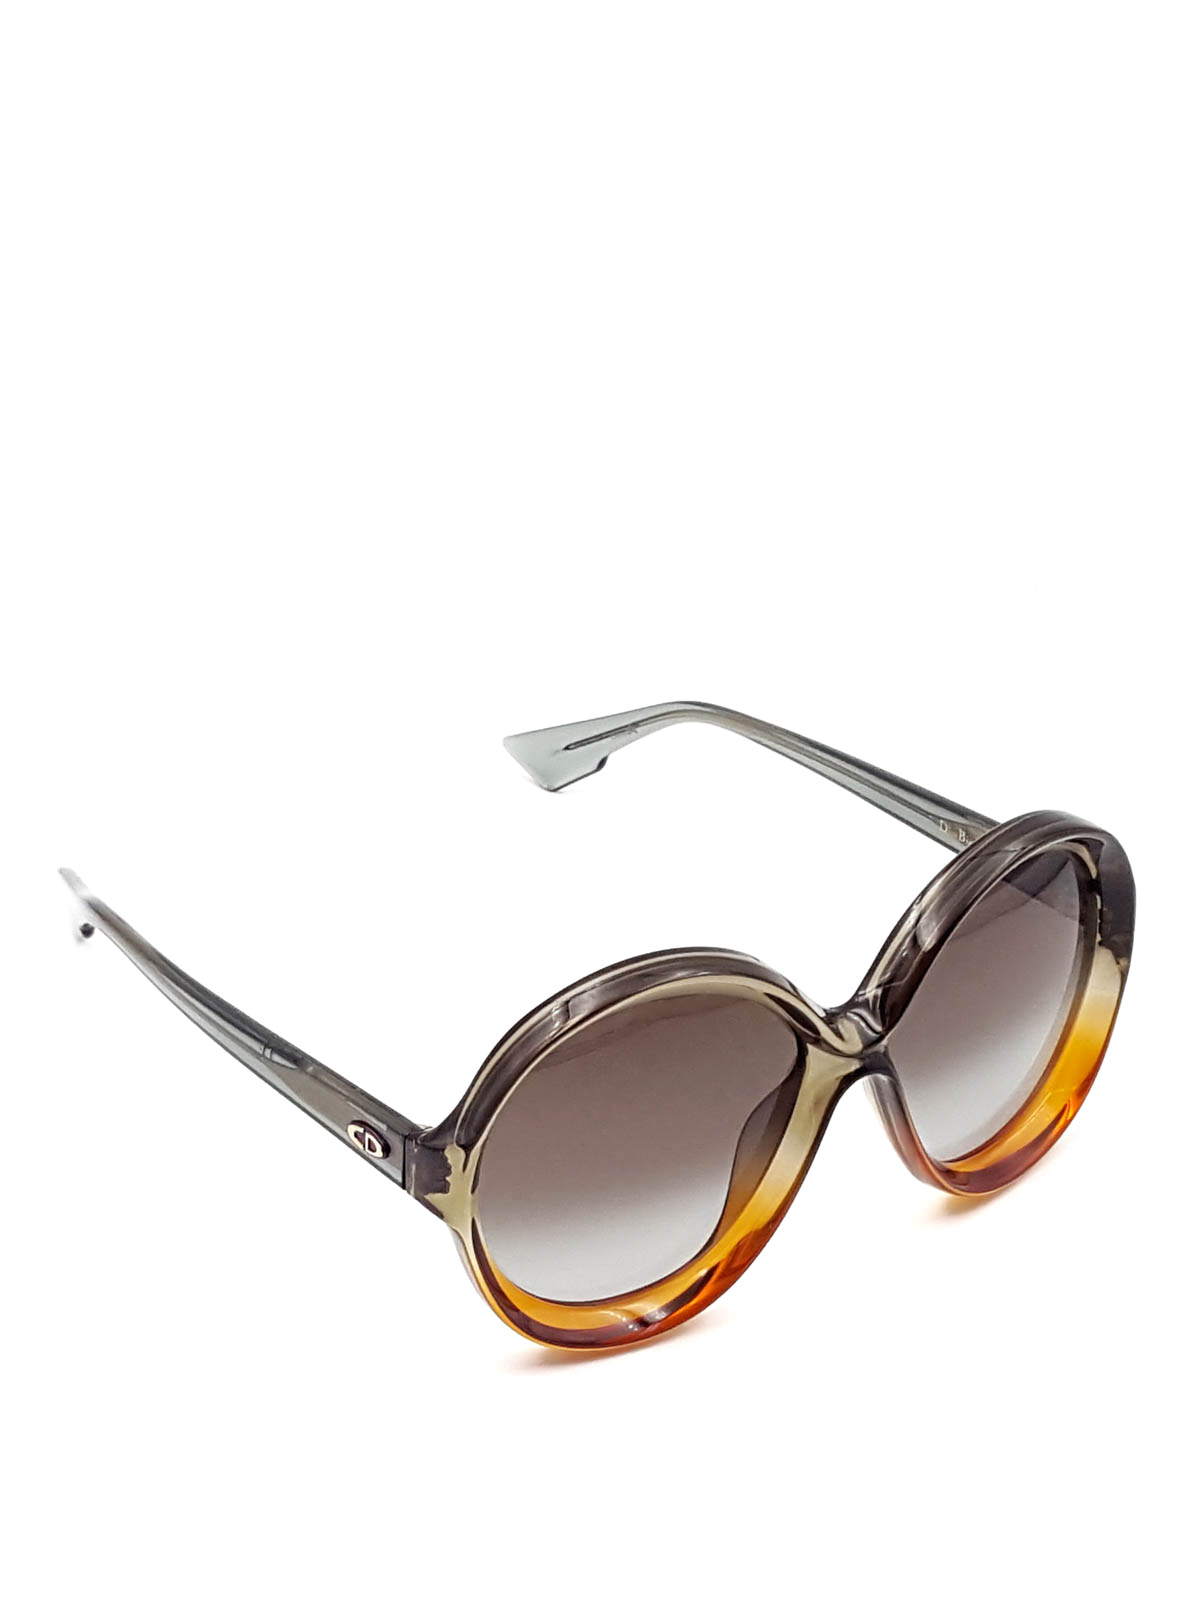 Sunglasses Dior - Bianca sunglasses - DIORBIANCALGP | Shop online at iKRIX